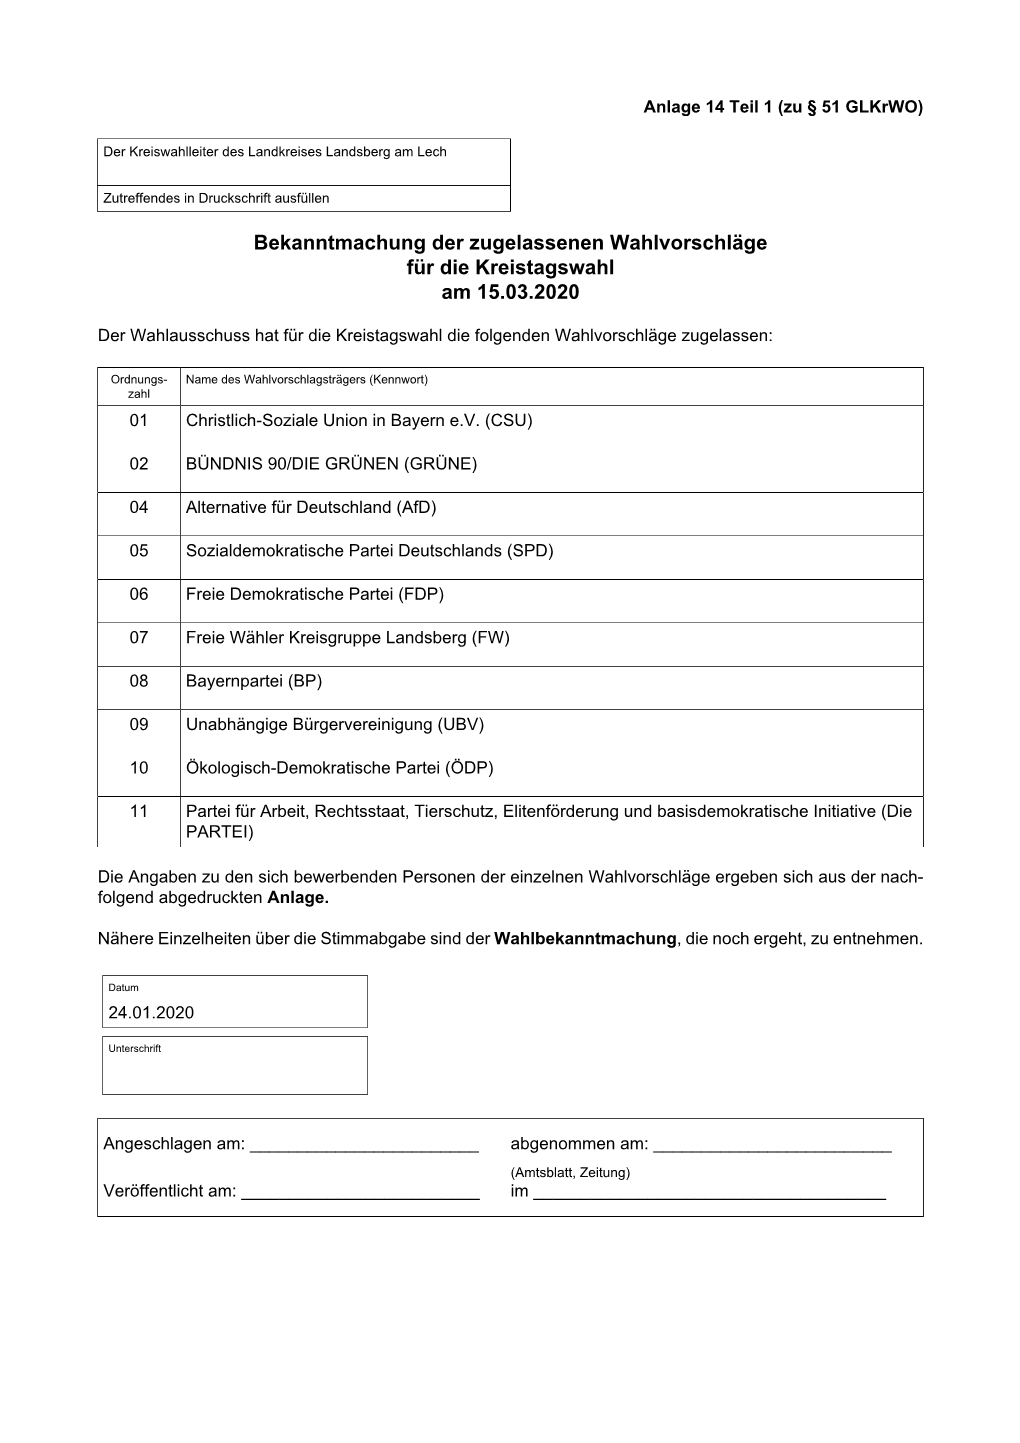 Bekanntmachung Der Zugelassenen Wahlvorschläge Für Die Kreistagswahl Am 15.03.2020